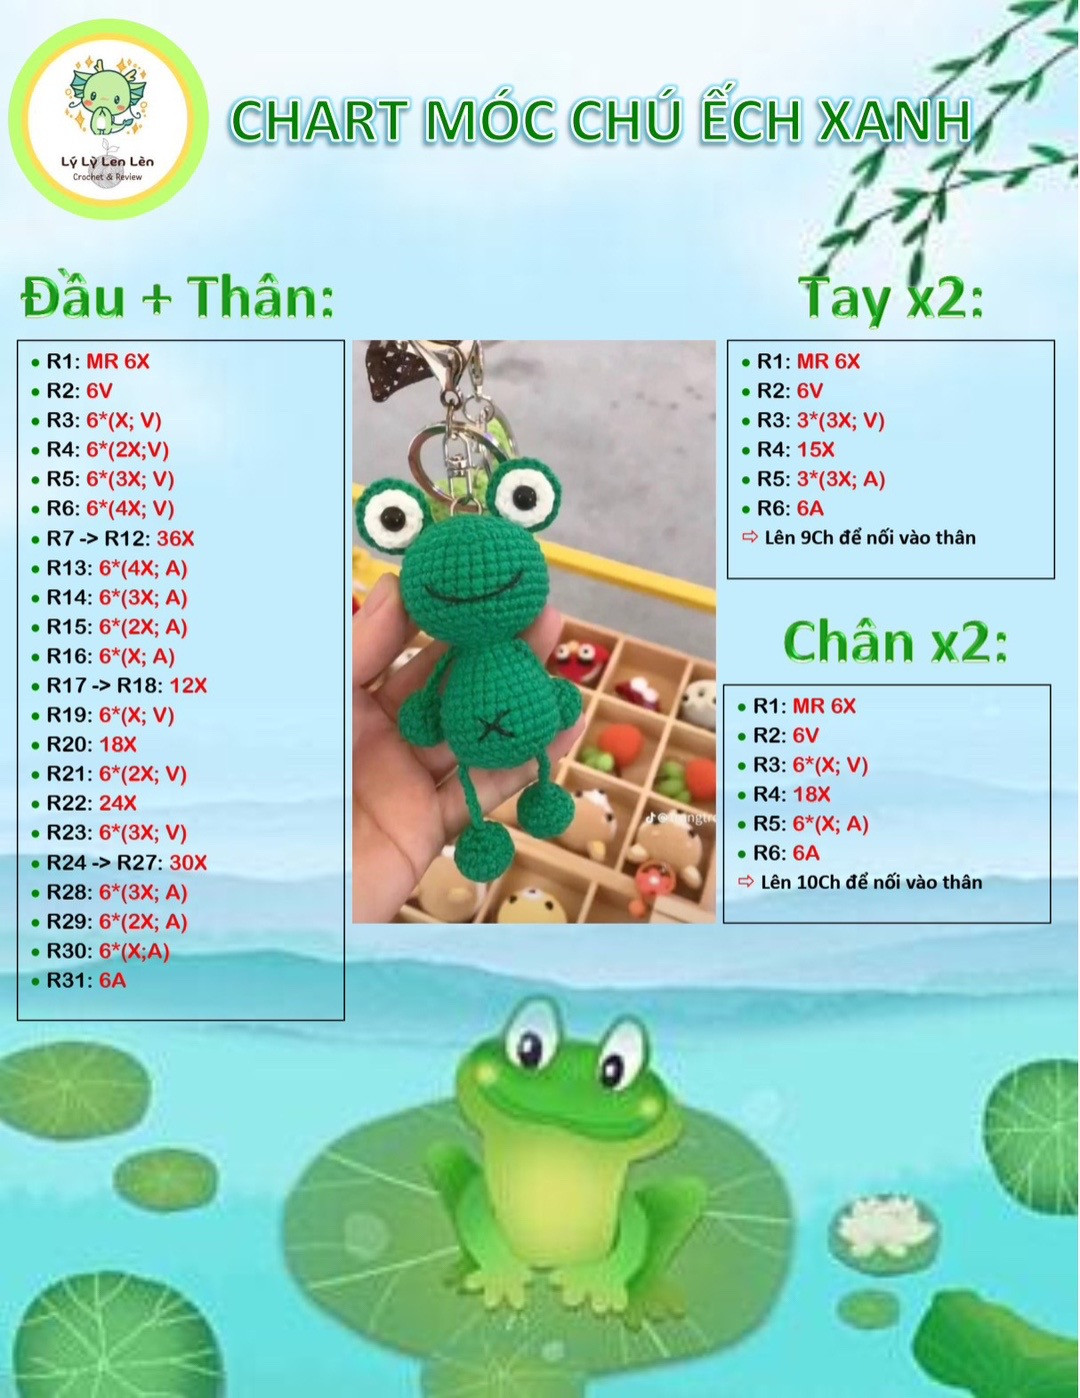 chart móc chú ếch xanh